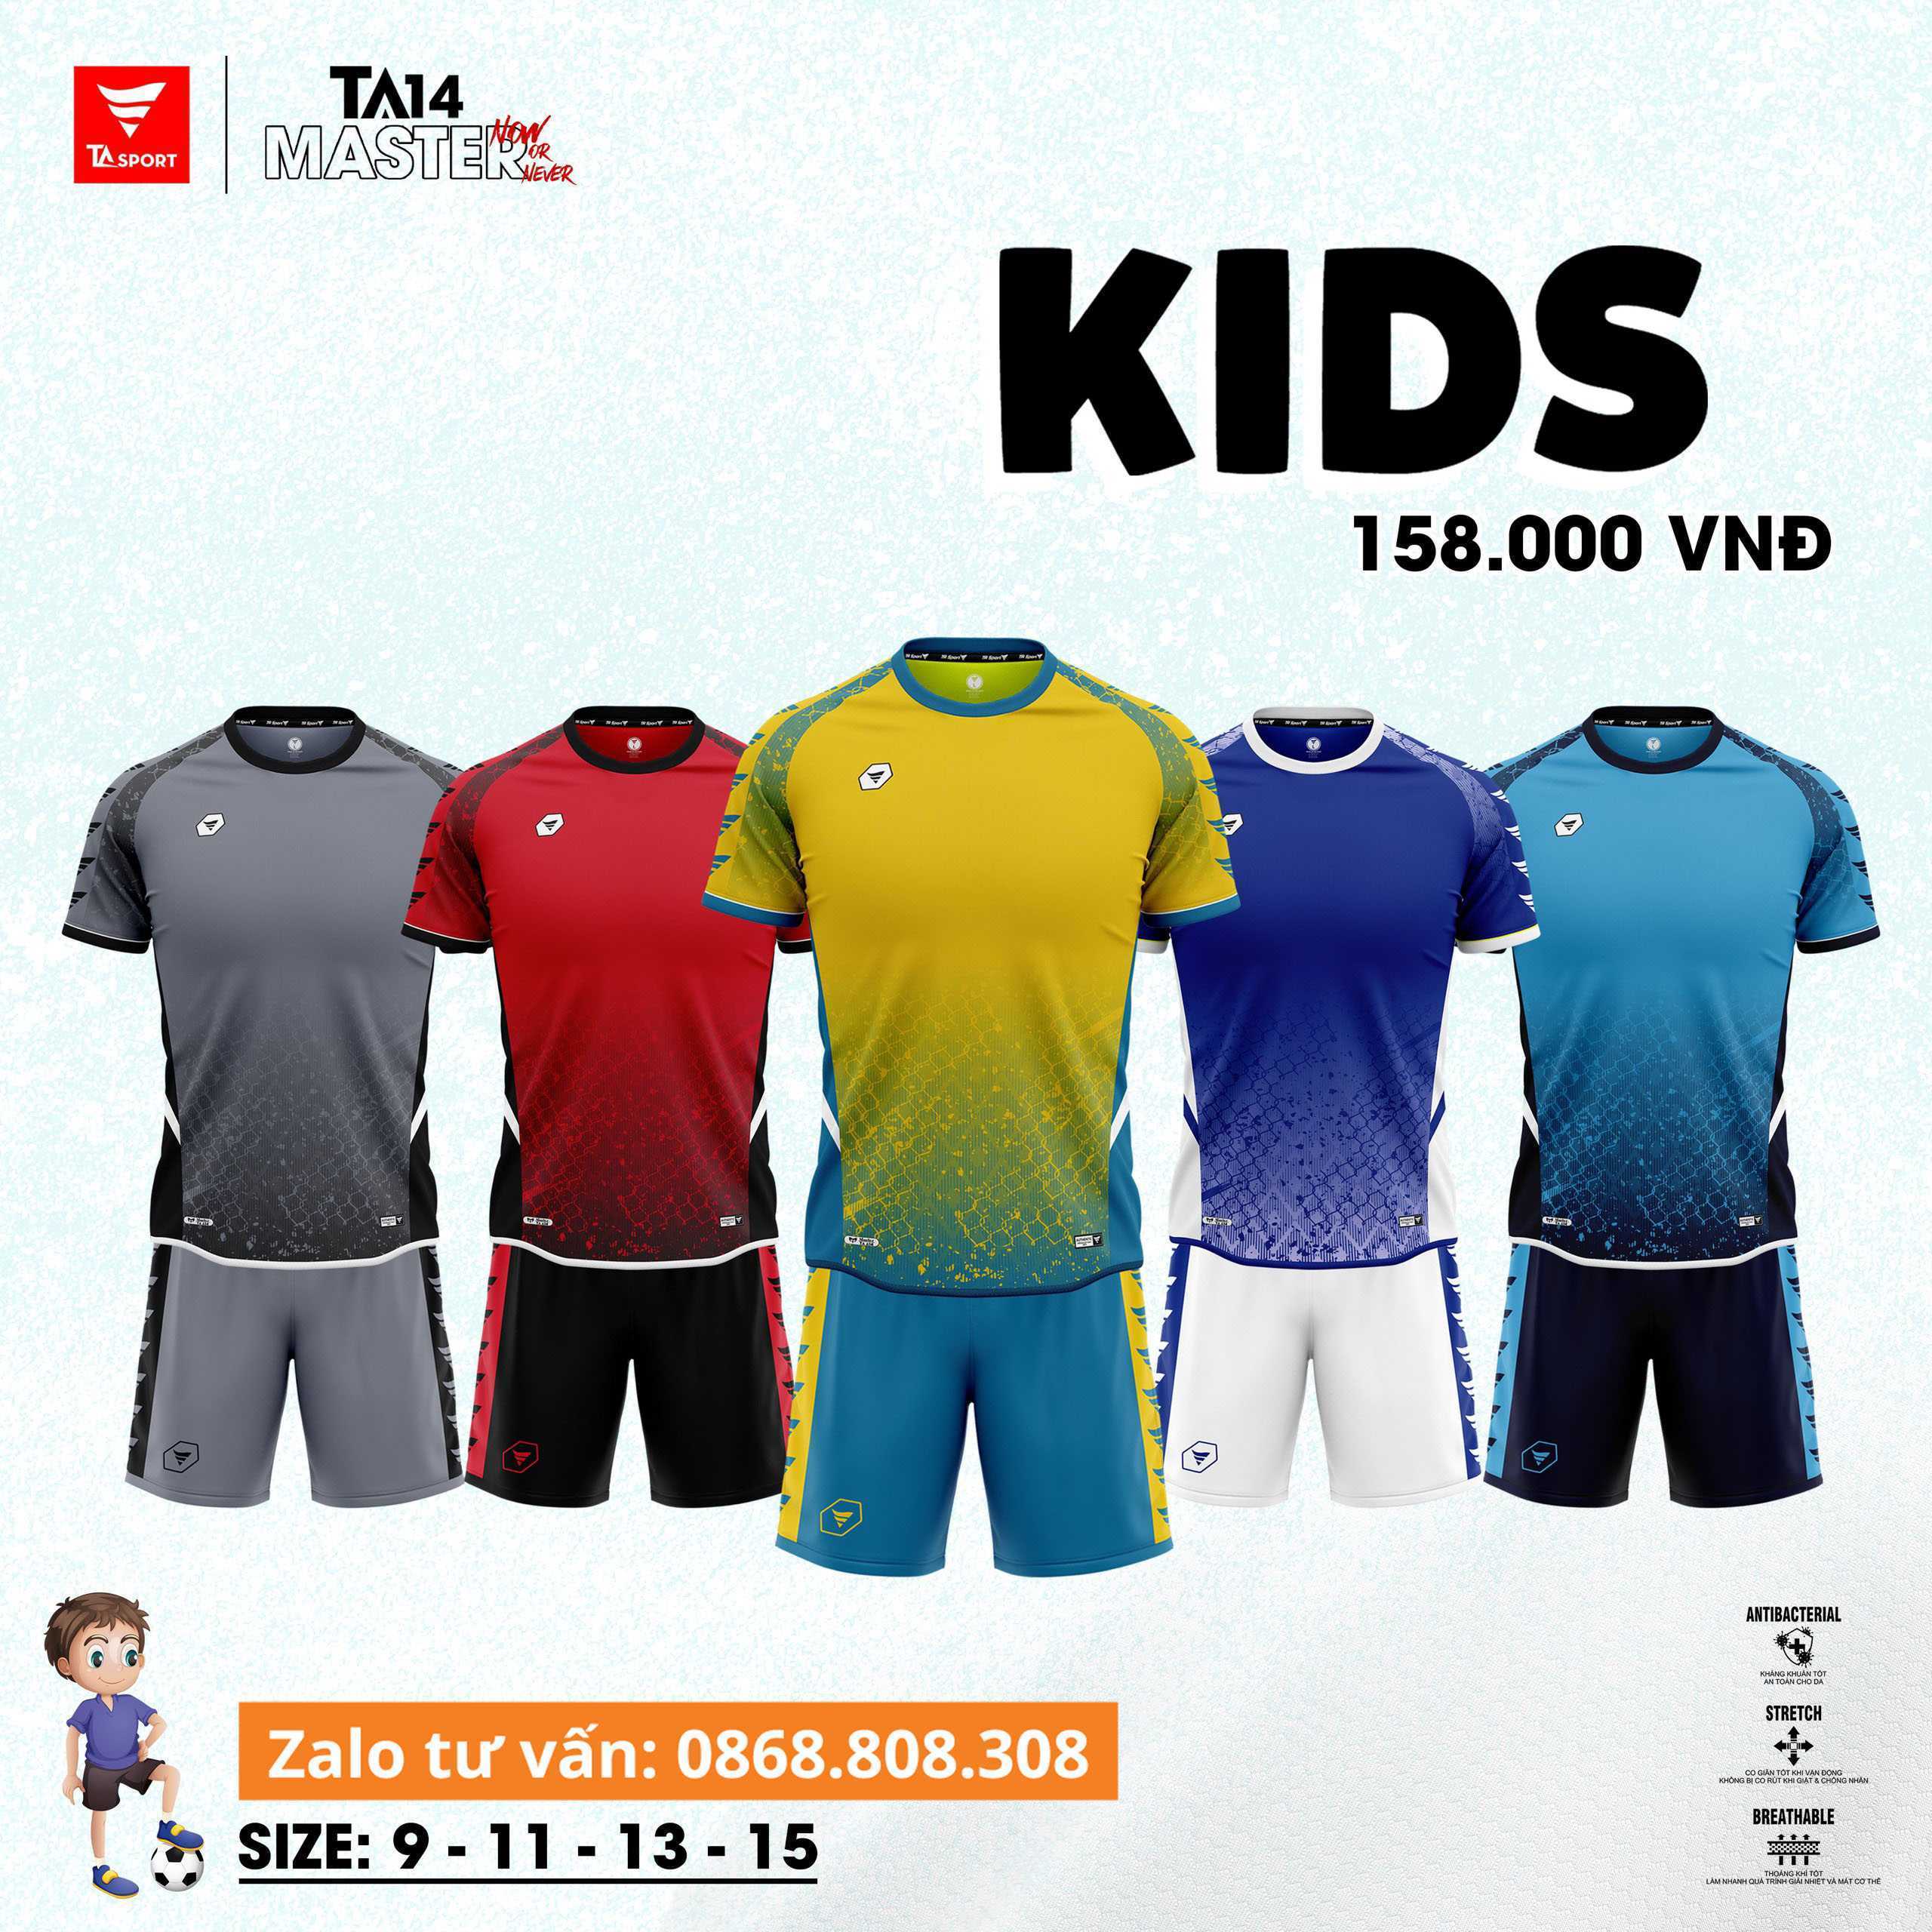 Bộ quần áo bóng đá chính hãng TA Sport TA14 Master Official KIDS size nhỏ cho trẻ em